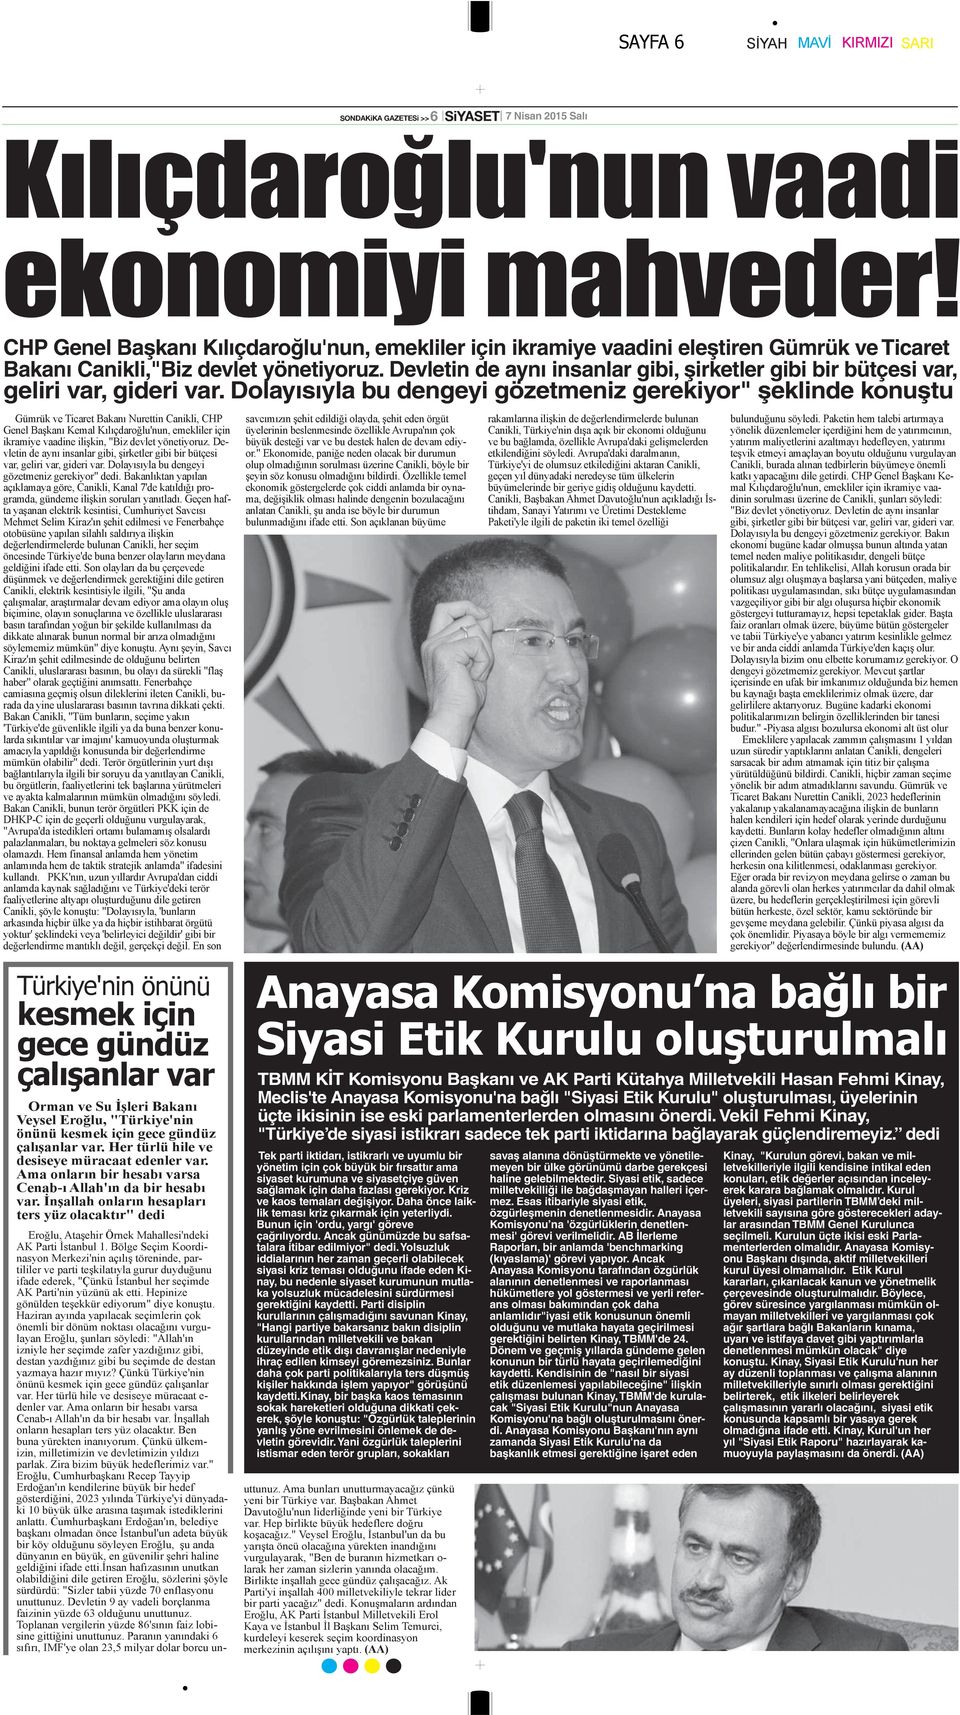 Dolayısıyla bu dengeyi gözetmeniz gerekiyor" şeklinde konuştu TBMM KİT Komisyonu Başkanı ve AK Parti Kütahya Milletvekili Hasan Fehmi Kinay, Meclis'te Anayasa Komisyonu'na bağlı "Siyasi Etik Kurulu"